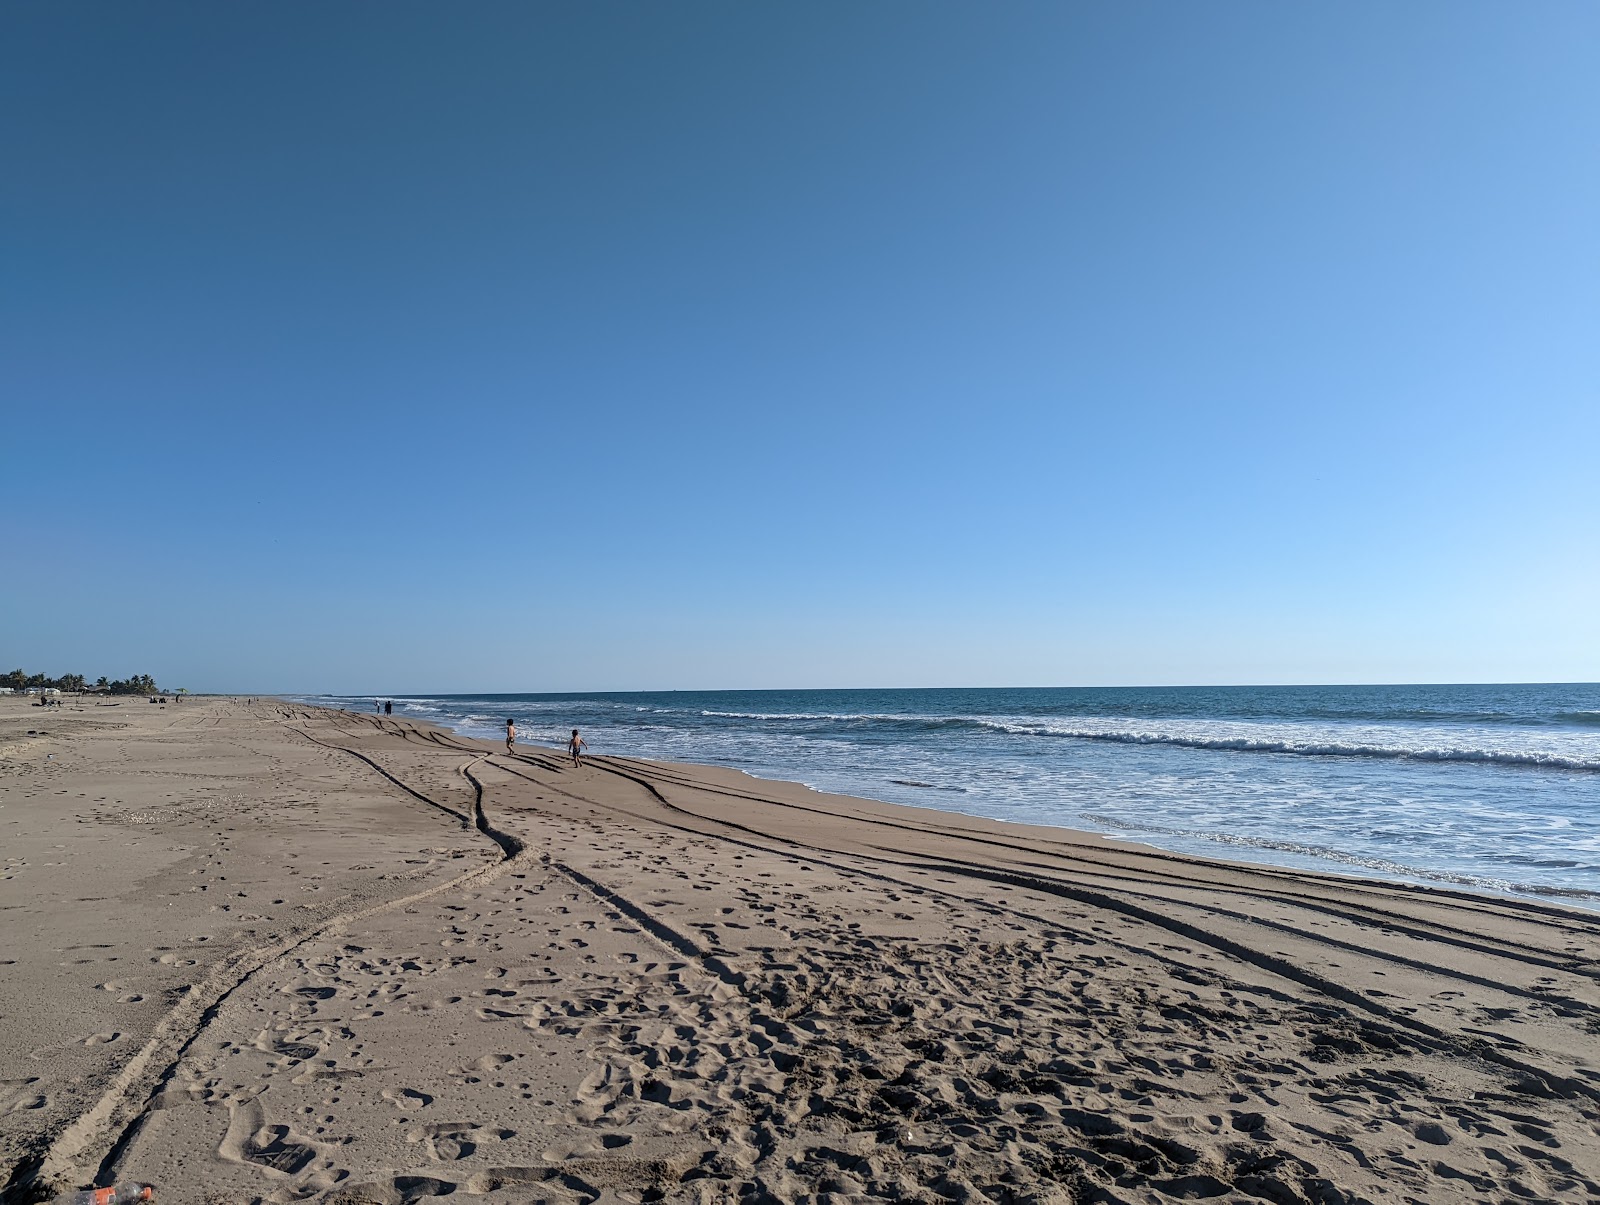 Zdjęcie El Caimanero beach z powierzchnią jasny piasek